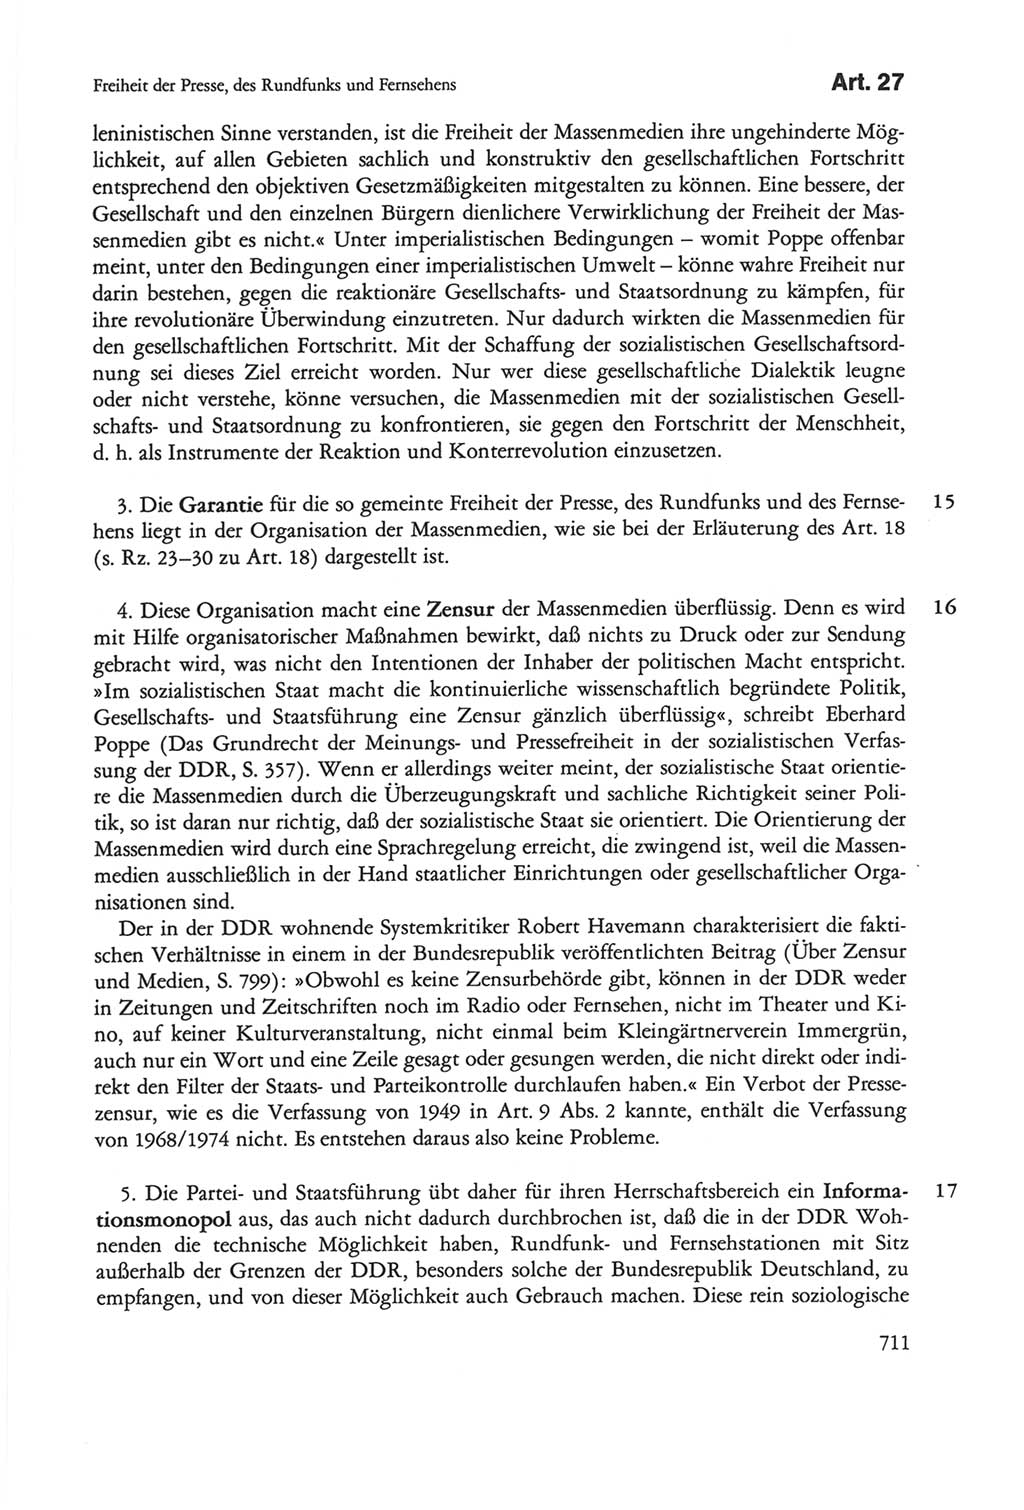 Die sozialistische Verfassung der Deutschen Demokratischen Republik (DDR), Kommentar mit einem Nachtrag 1997, Seite 711 (Soz. Verf. DDR Komm. Nachtr. 1997, S. 711)